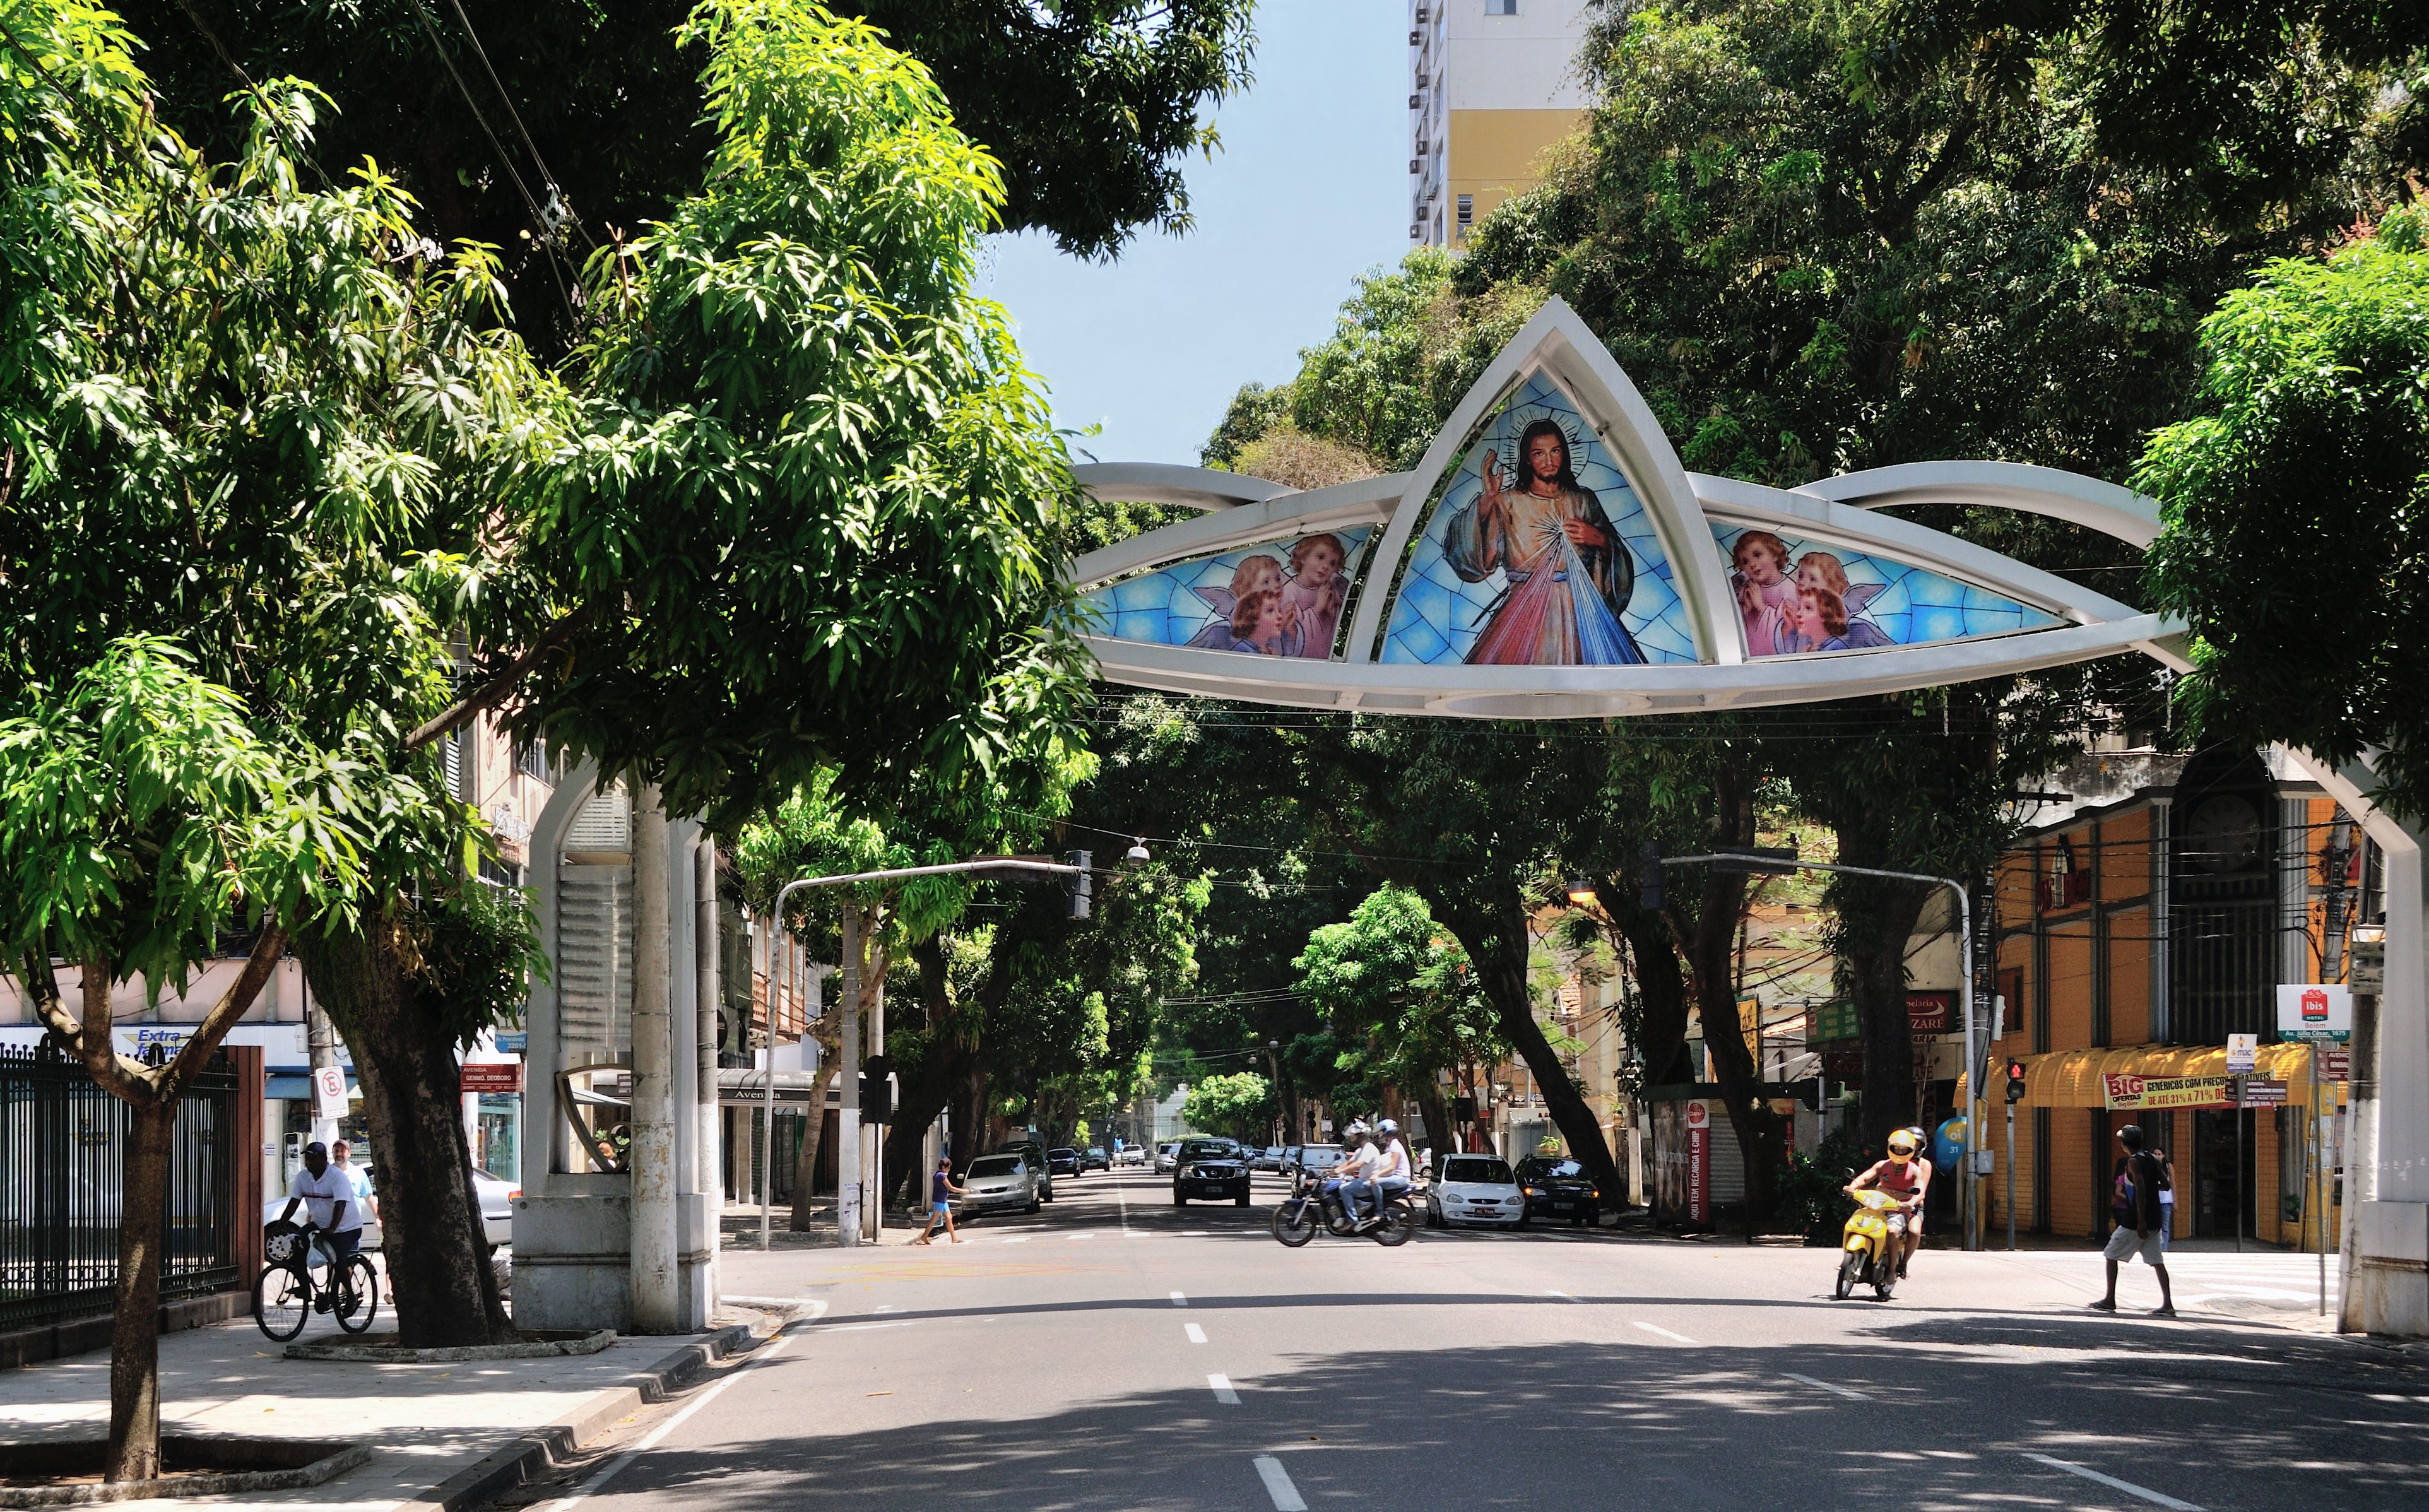 Avenida Nazaré in Belém do Pará, Brazil. Wikimedia Commons.